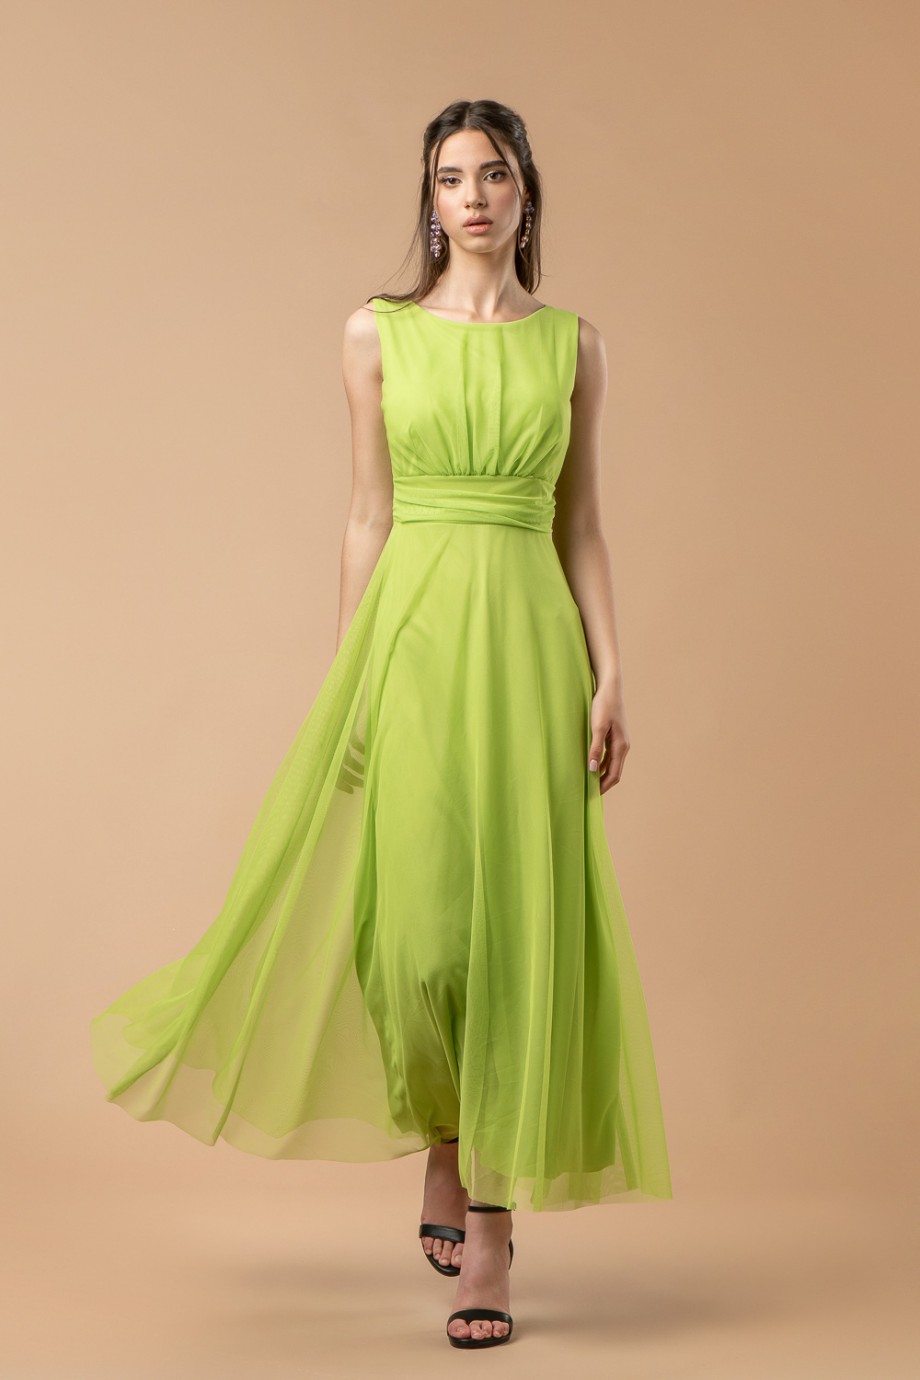 Μακρύ πράσινο τούλινο φόρεμα με ζώνη